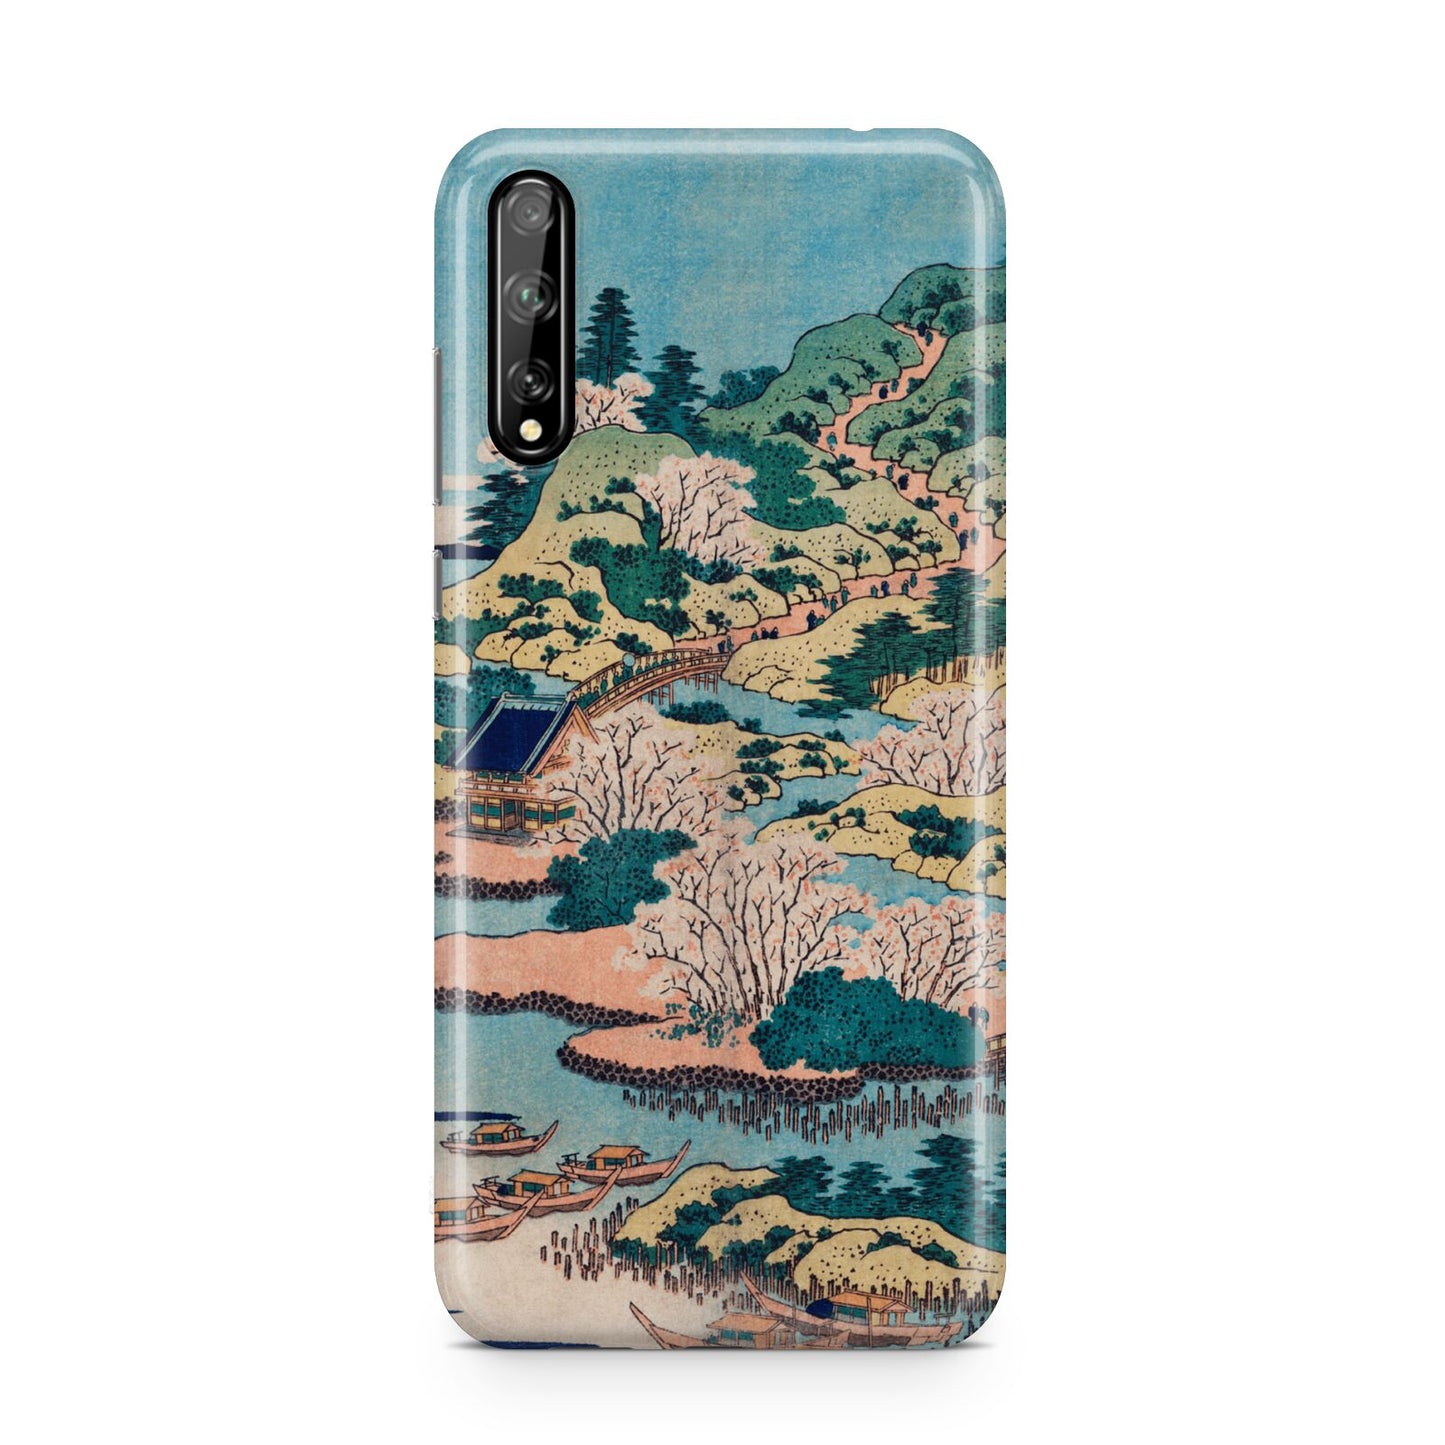 Coastal Community By Katsushika Hokusai Huawei Enjoy 10s Phone Case